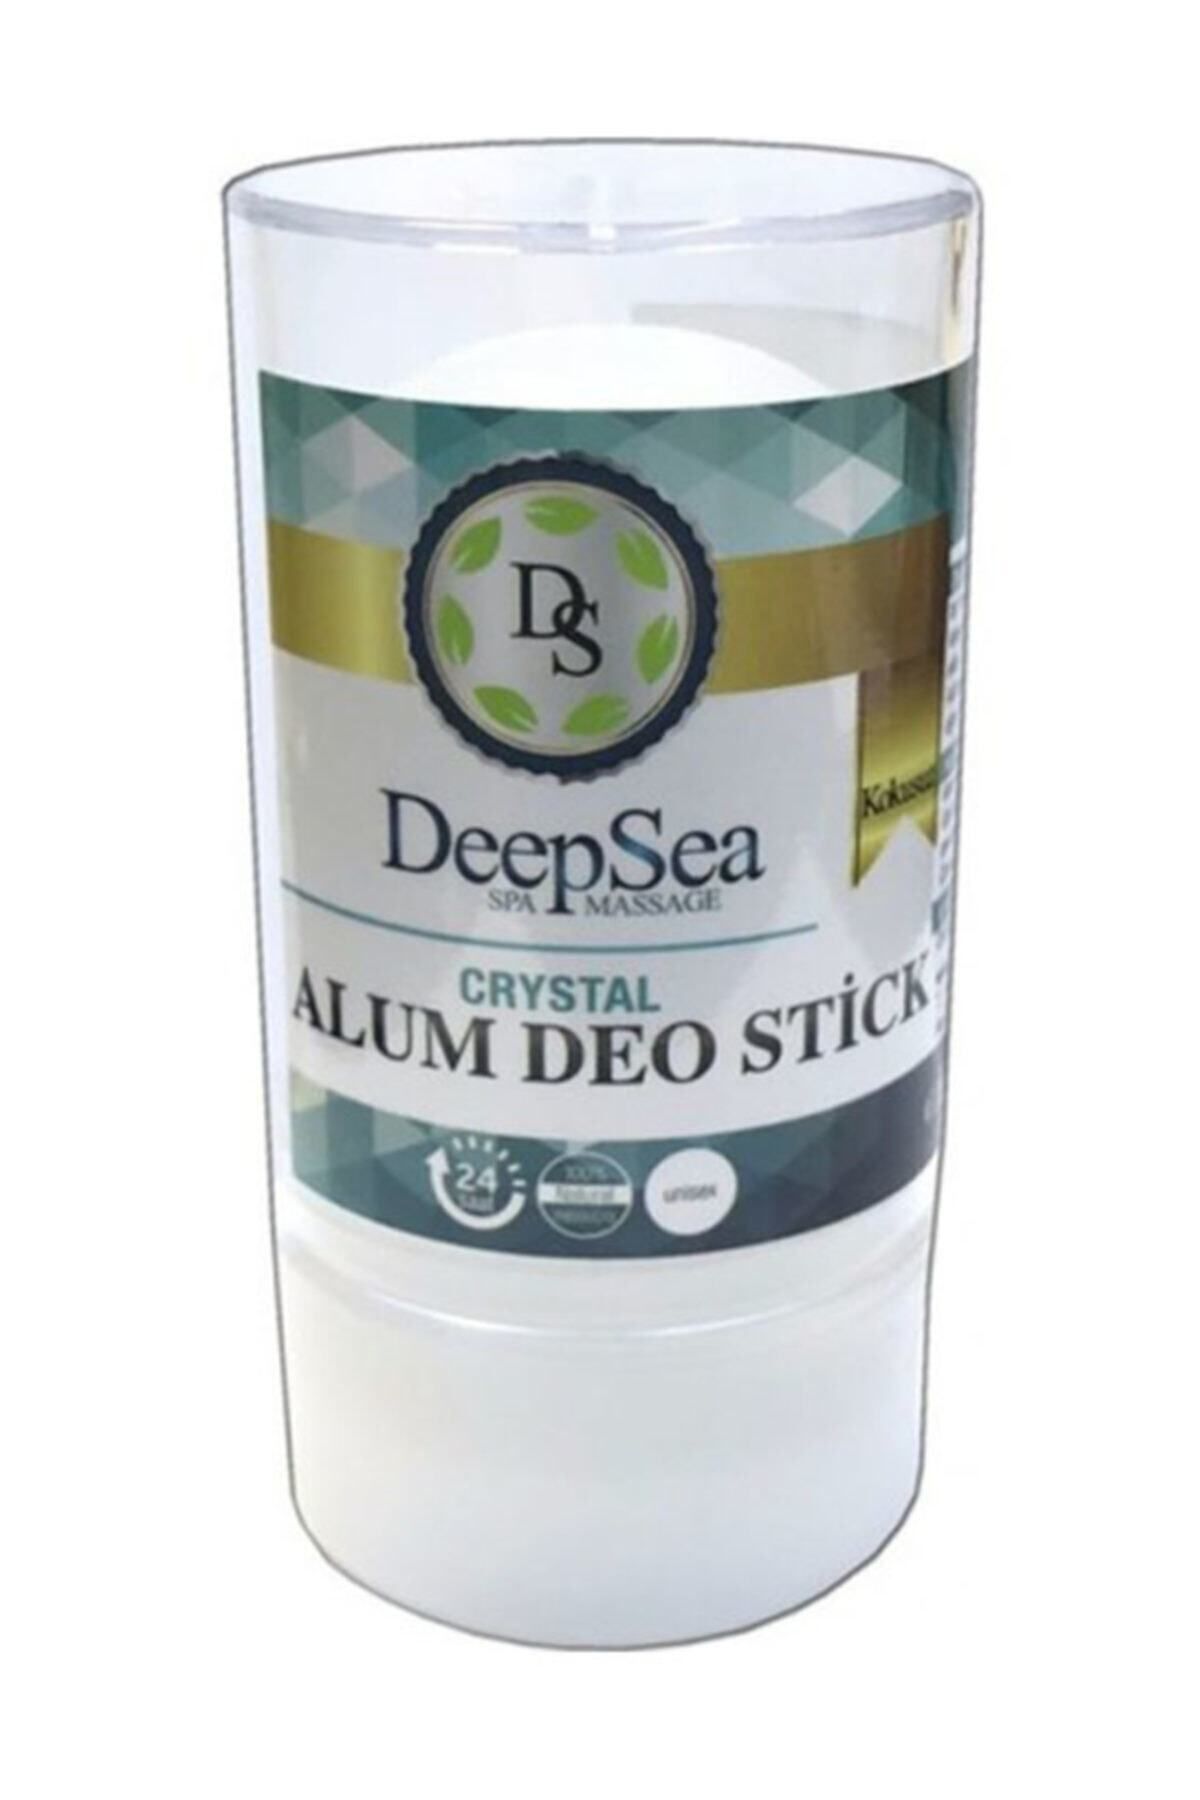 DeepSea Tuz Roll Alum Deo Stick 60gr